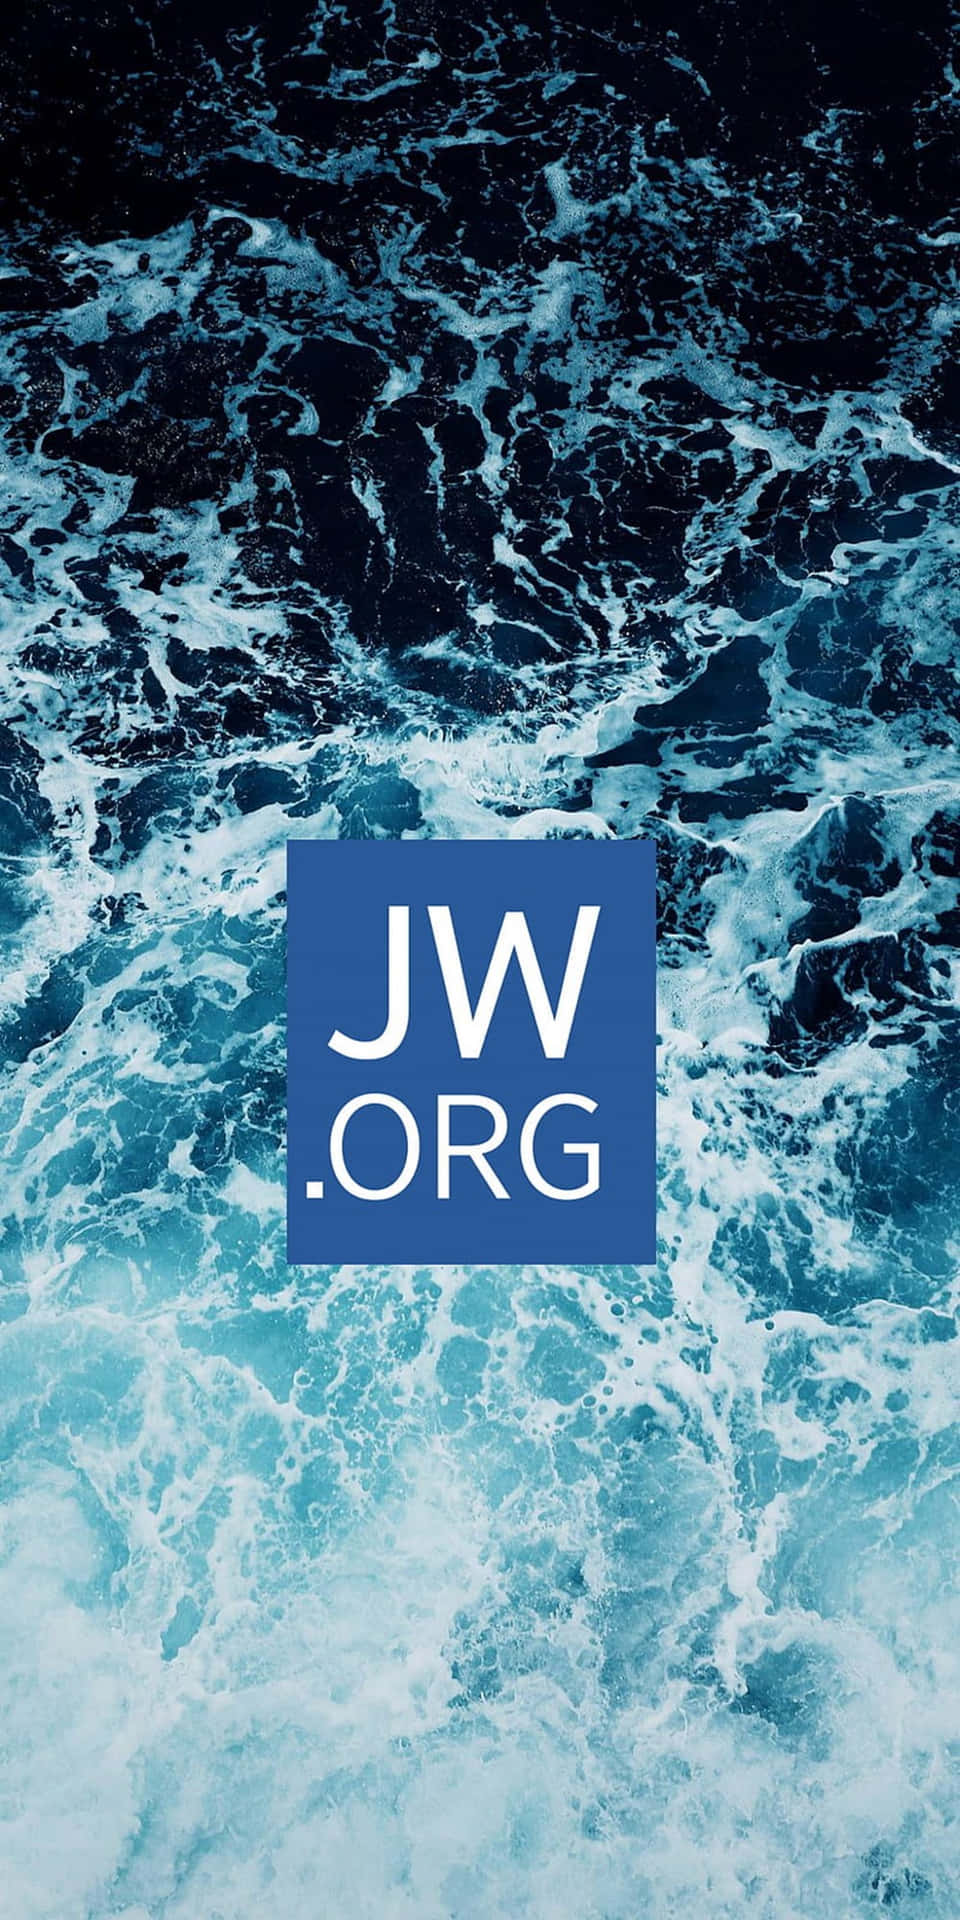 Jworg-logo Auf Meereswellen Wallpaper